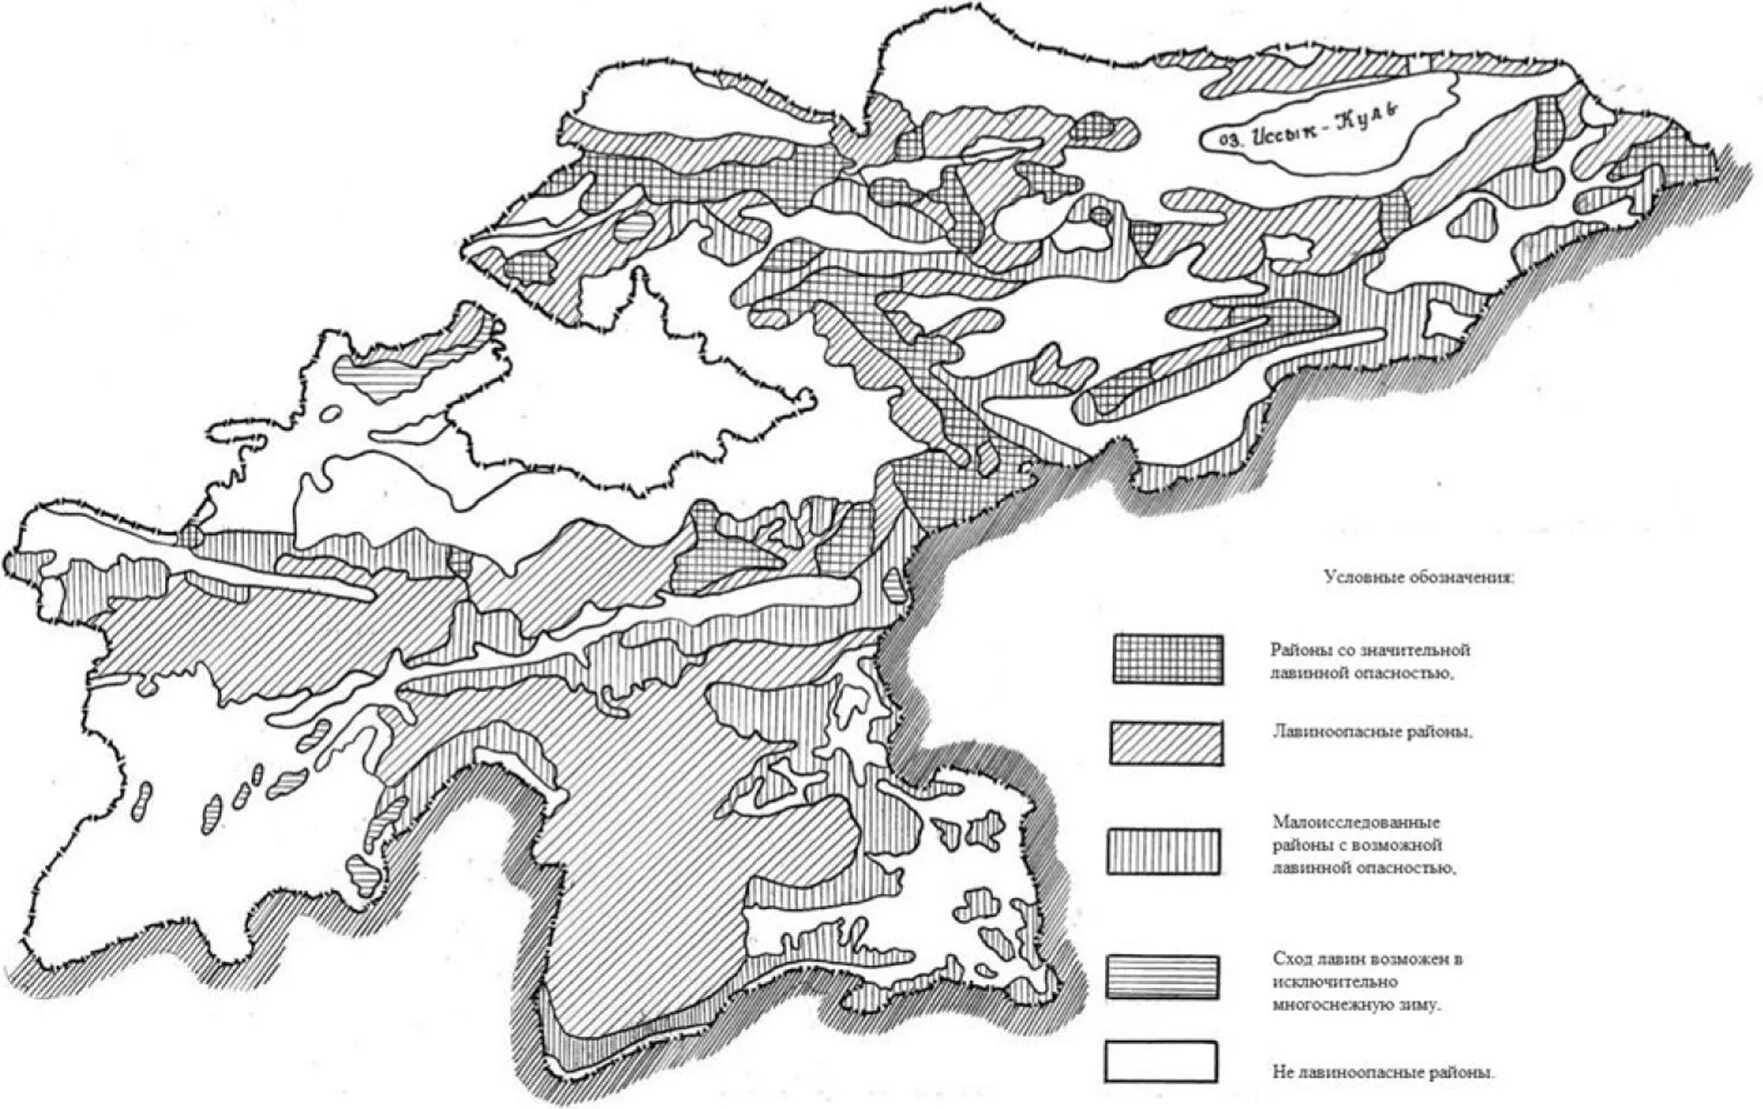 Ископаемые средней азии. Карта почвенно-географического районирования СССР. Ландшафтное районирование. Лесорастительное районирование. Карта лавиноопасных районов.